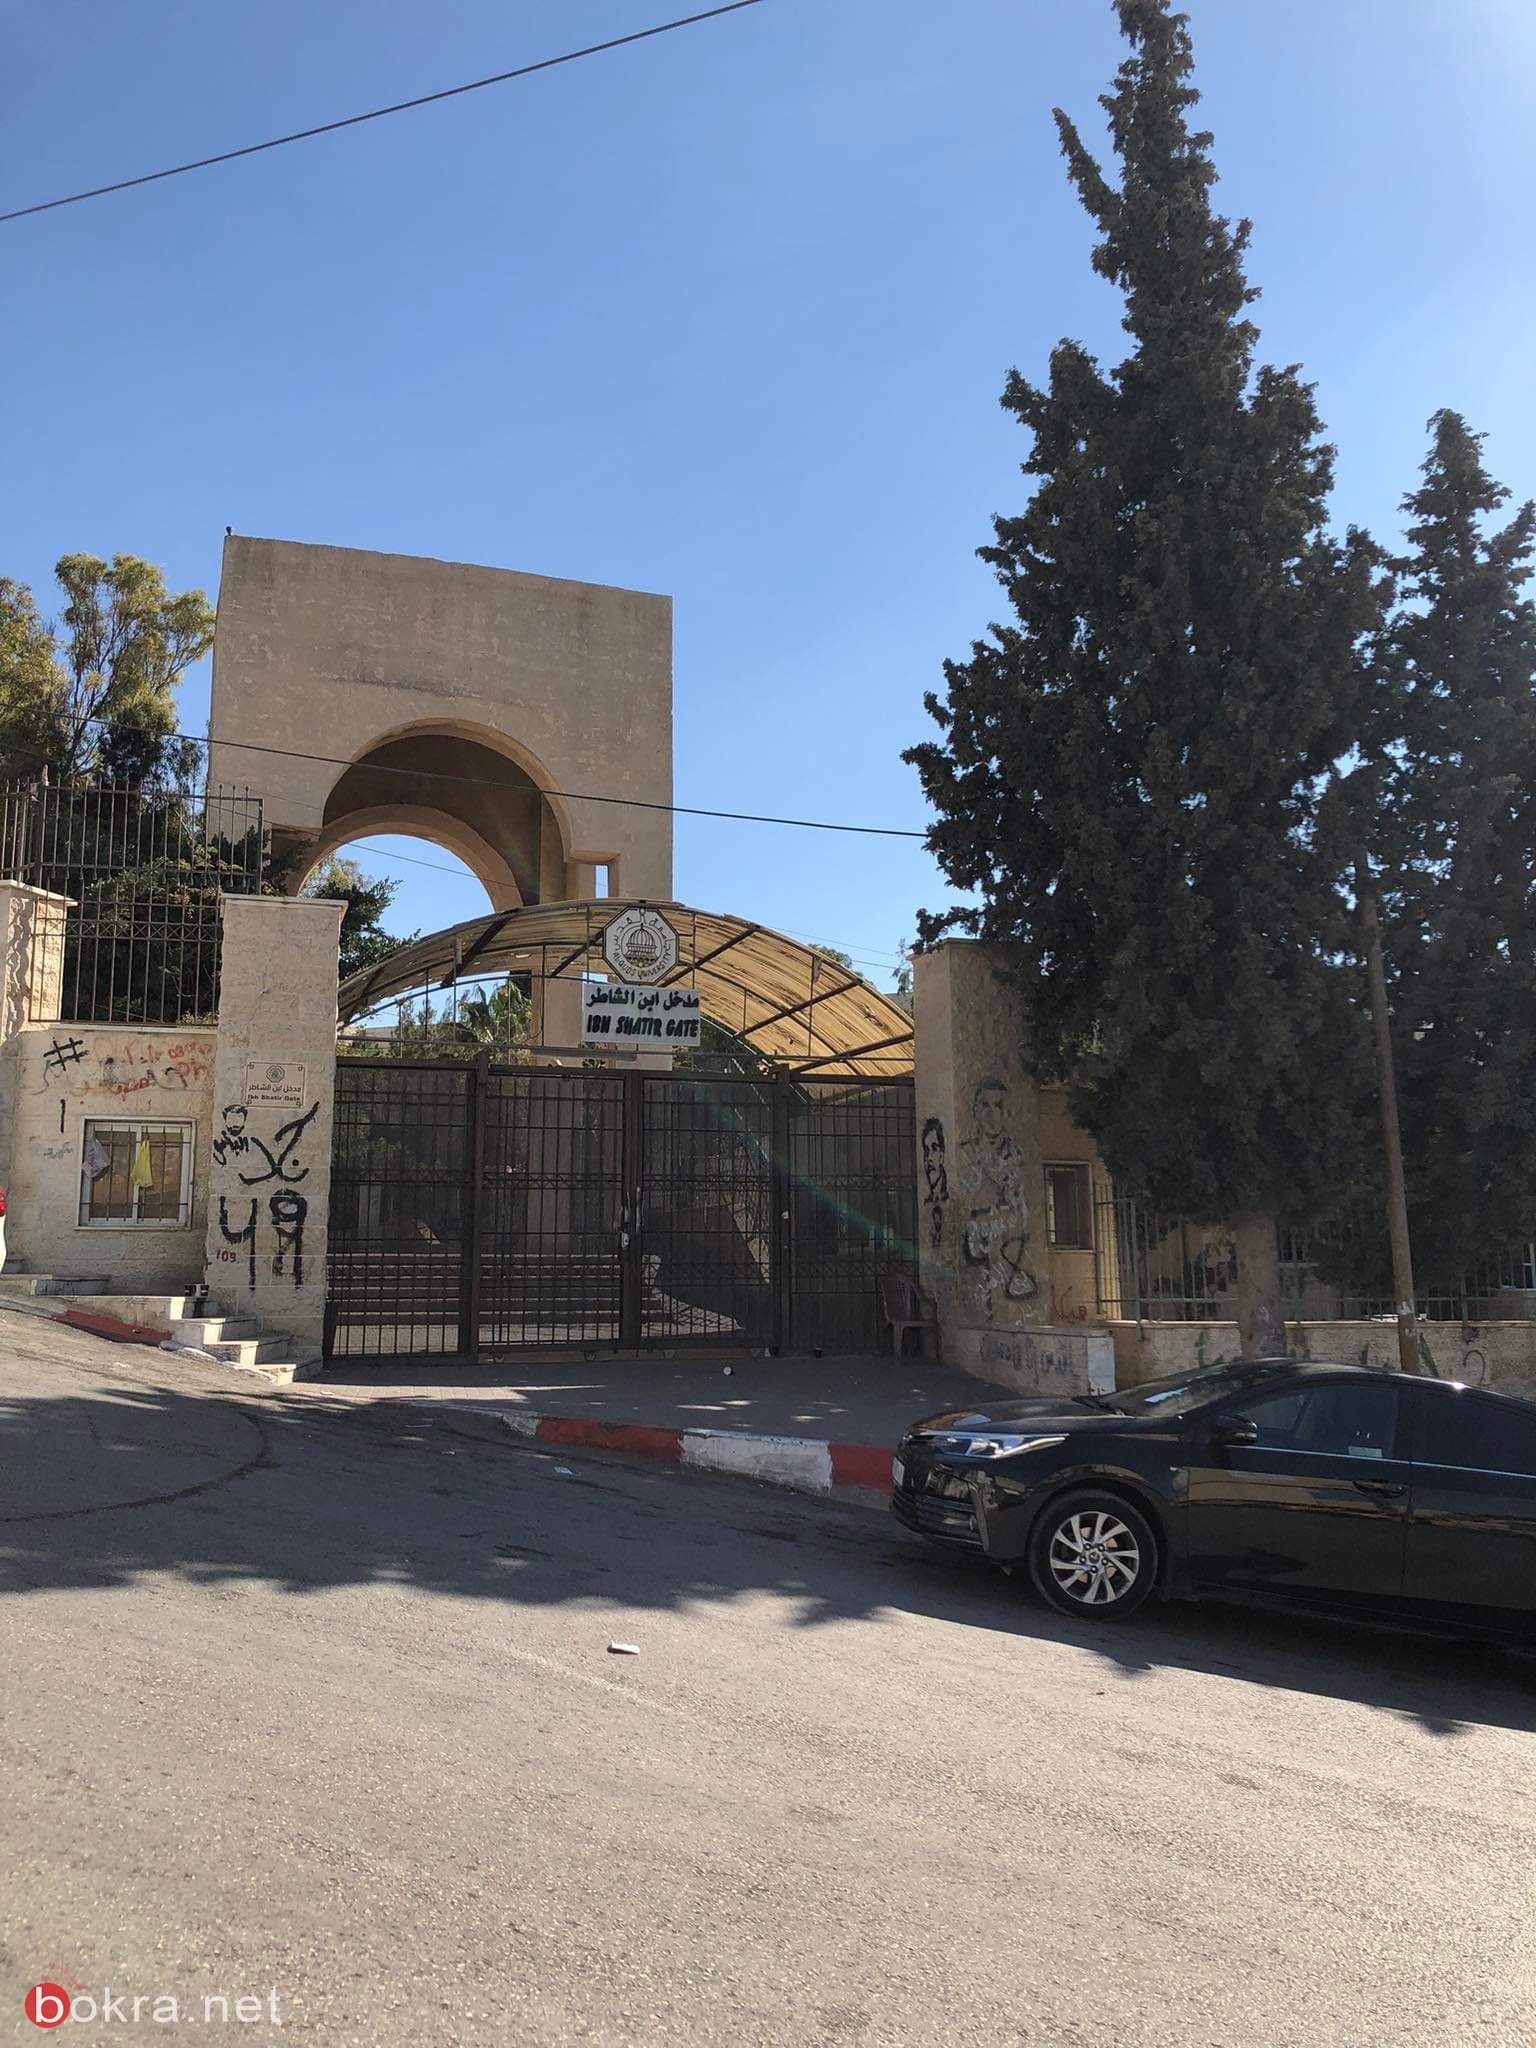 بالصور: جامعة القدس ابو ديس خاوية على عروشها-5